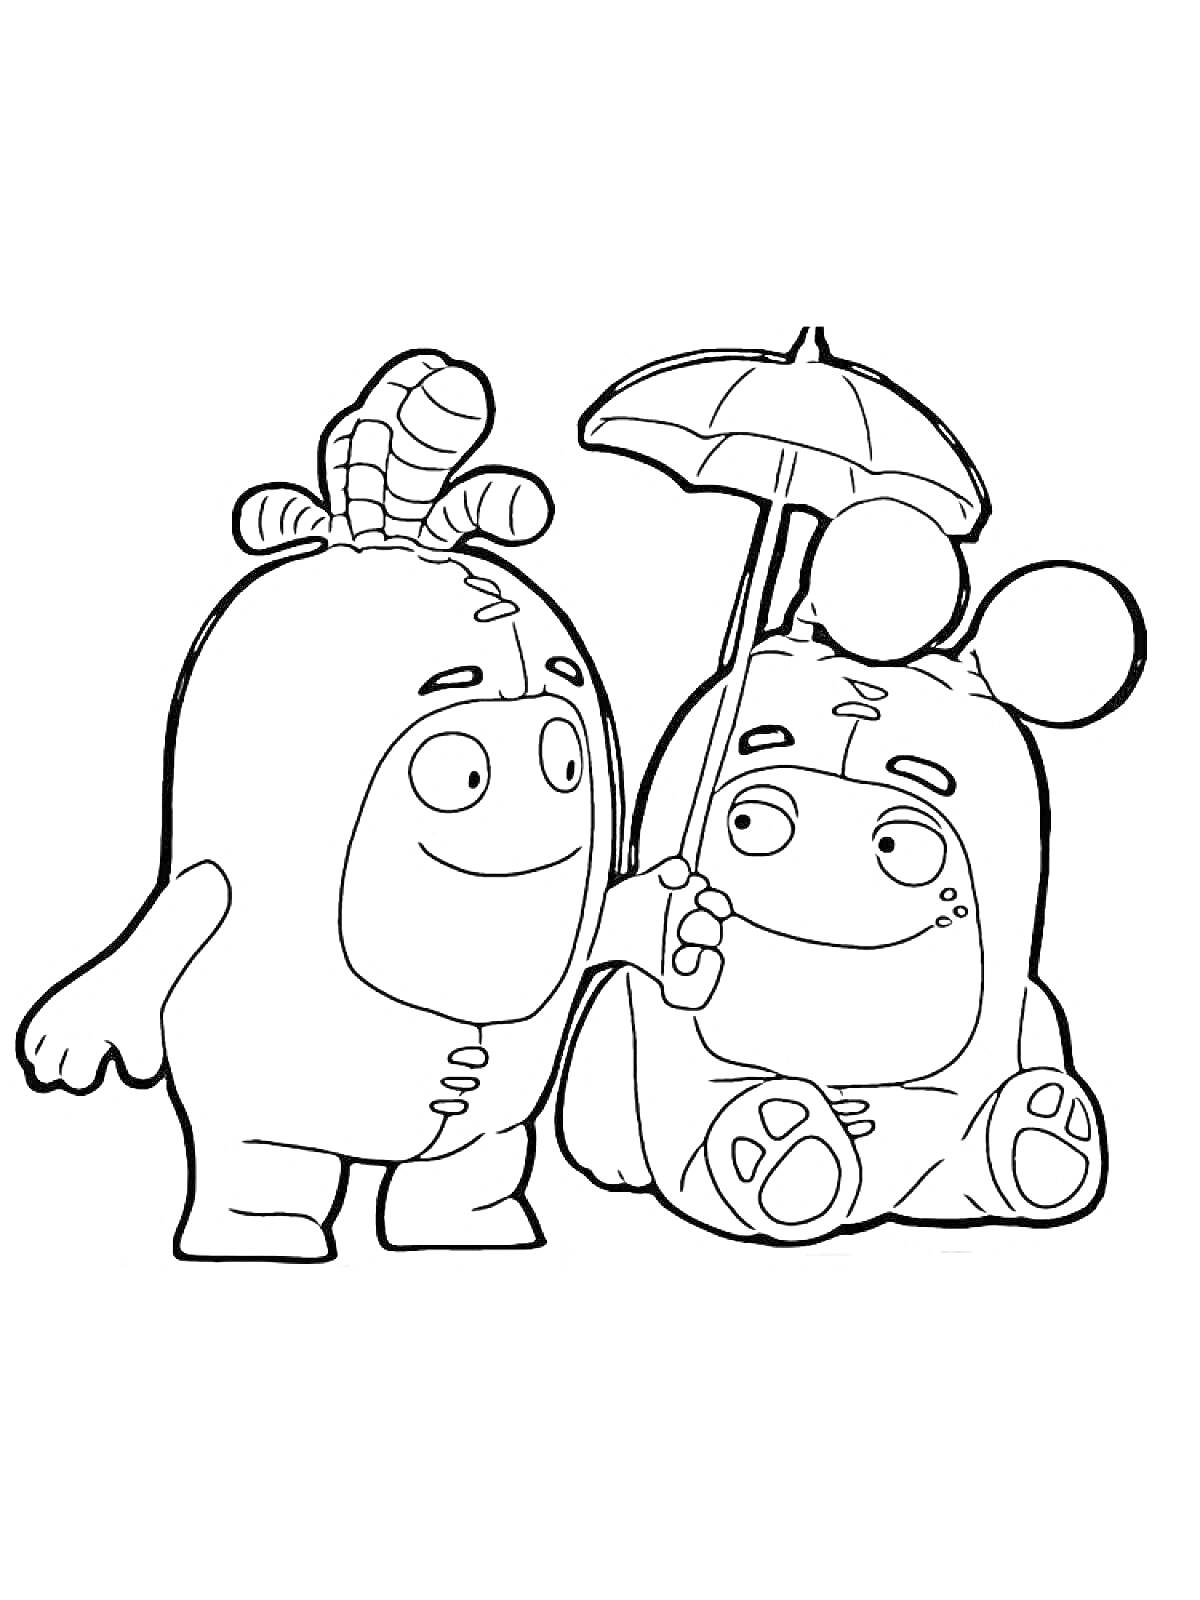 Раскраска Два чудика, стоящий чудик с рожками и сидящий чудик с ушками, держащие зонтик